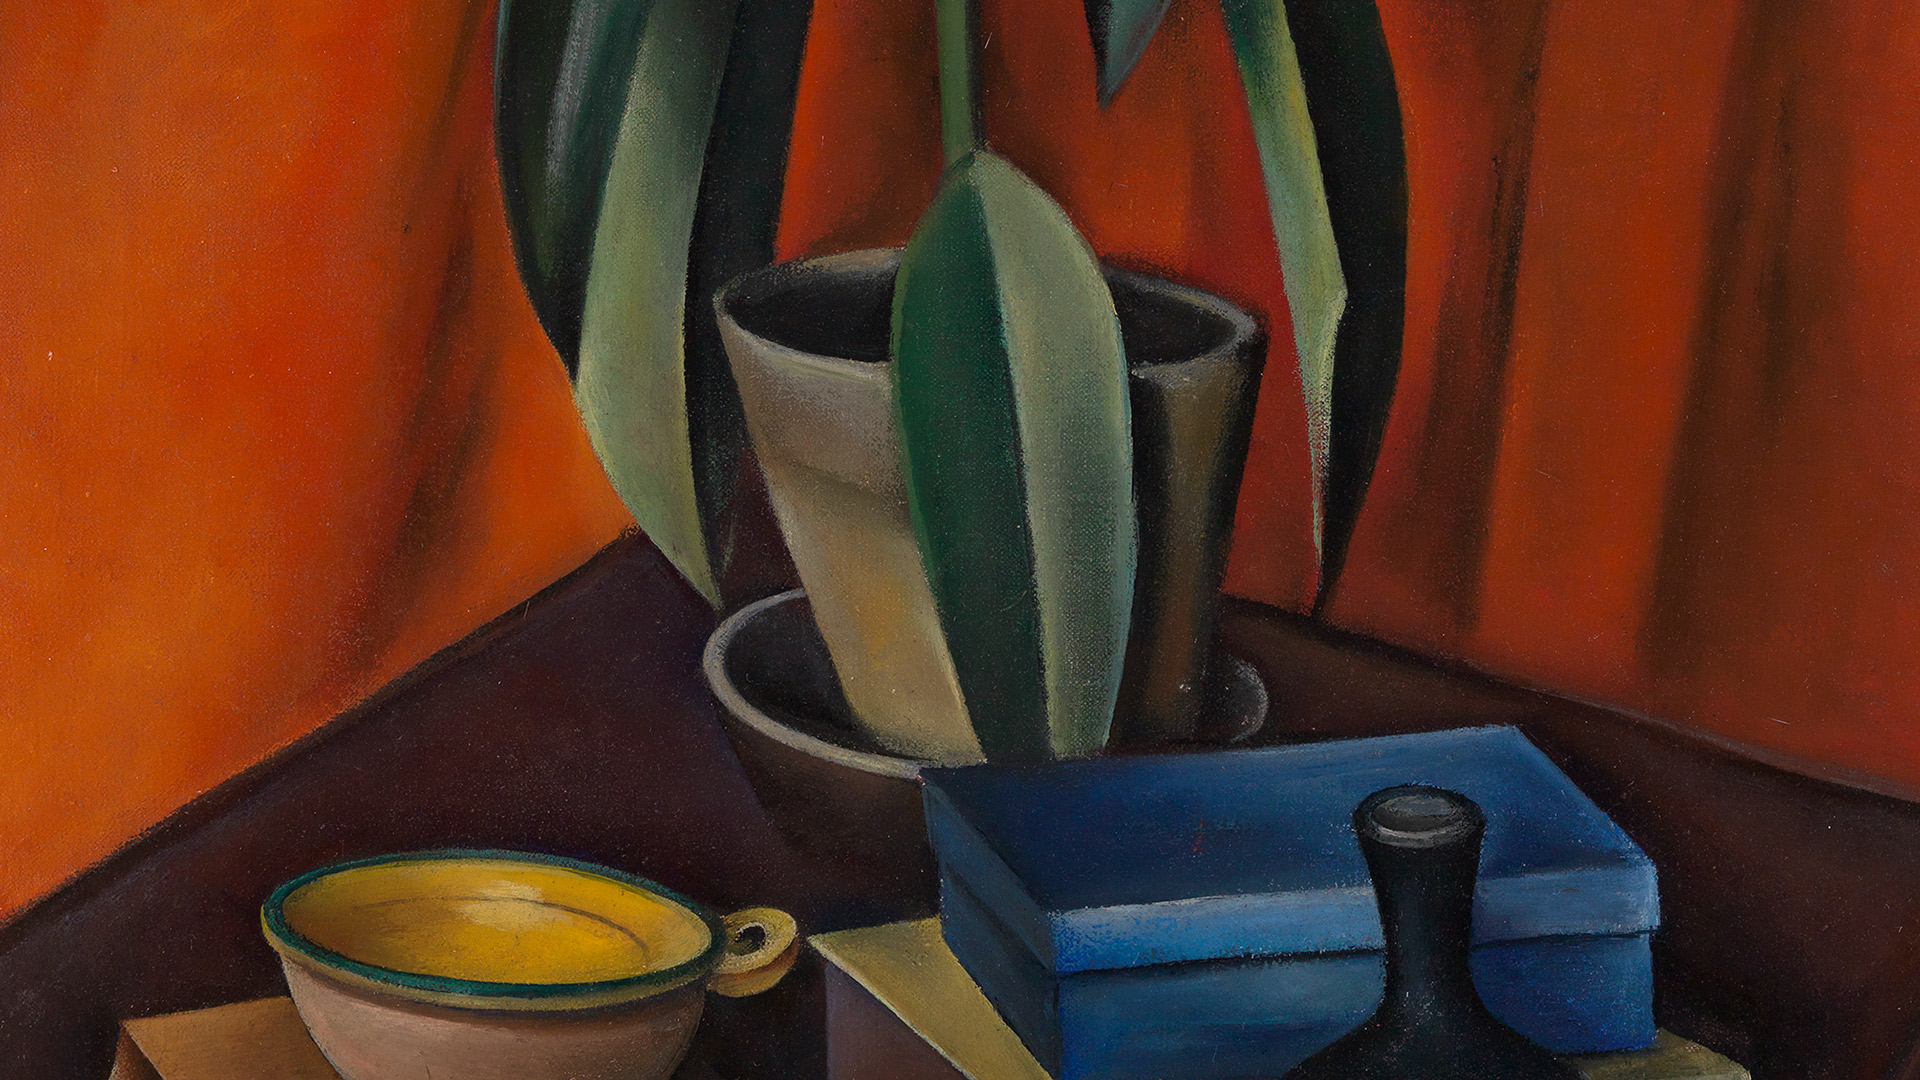 Abbildung des Gemäldes "Stillleben mit Gummibaum" von Alexander Kanoldt aus dem Jahr 1921. Ein Gummibaum steht auf einem Tisch. Um ihn liegen Bücher, eine Tasse und eine Flasche.